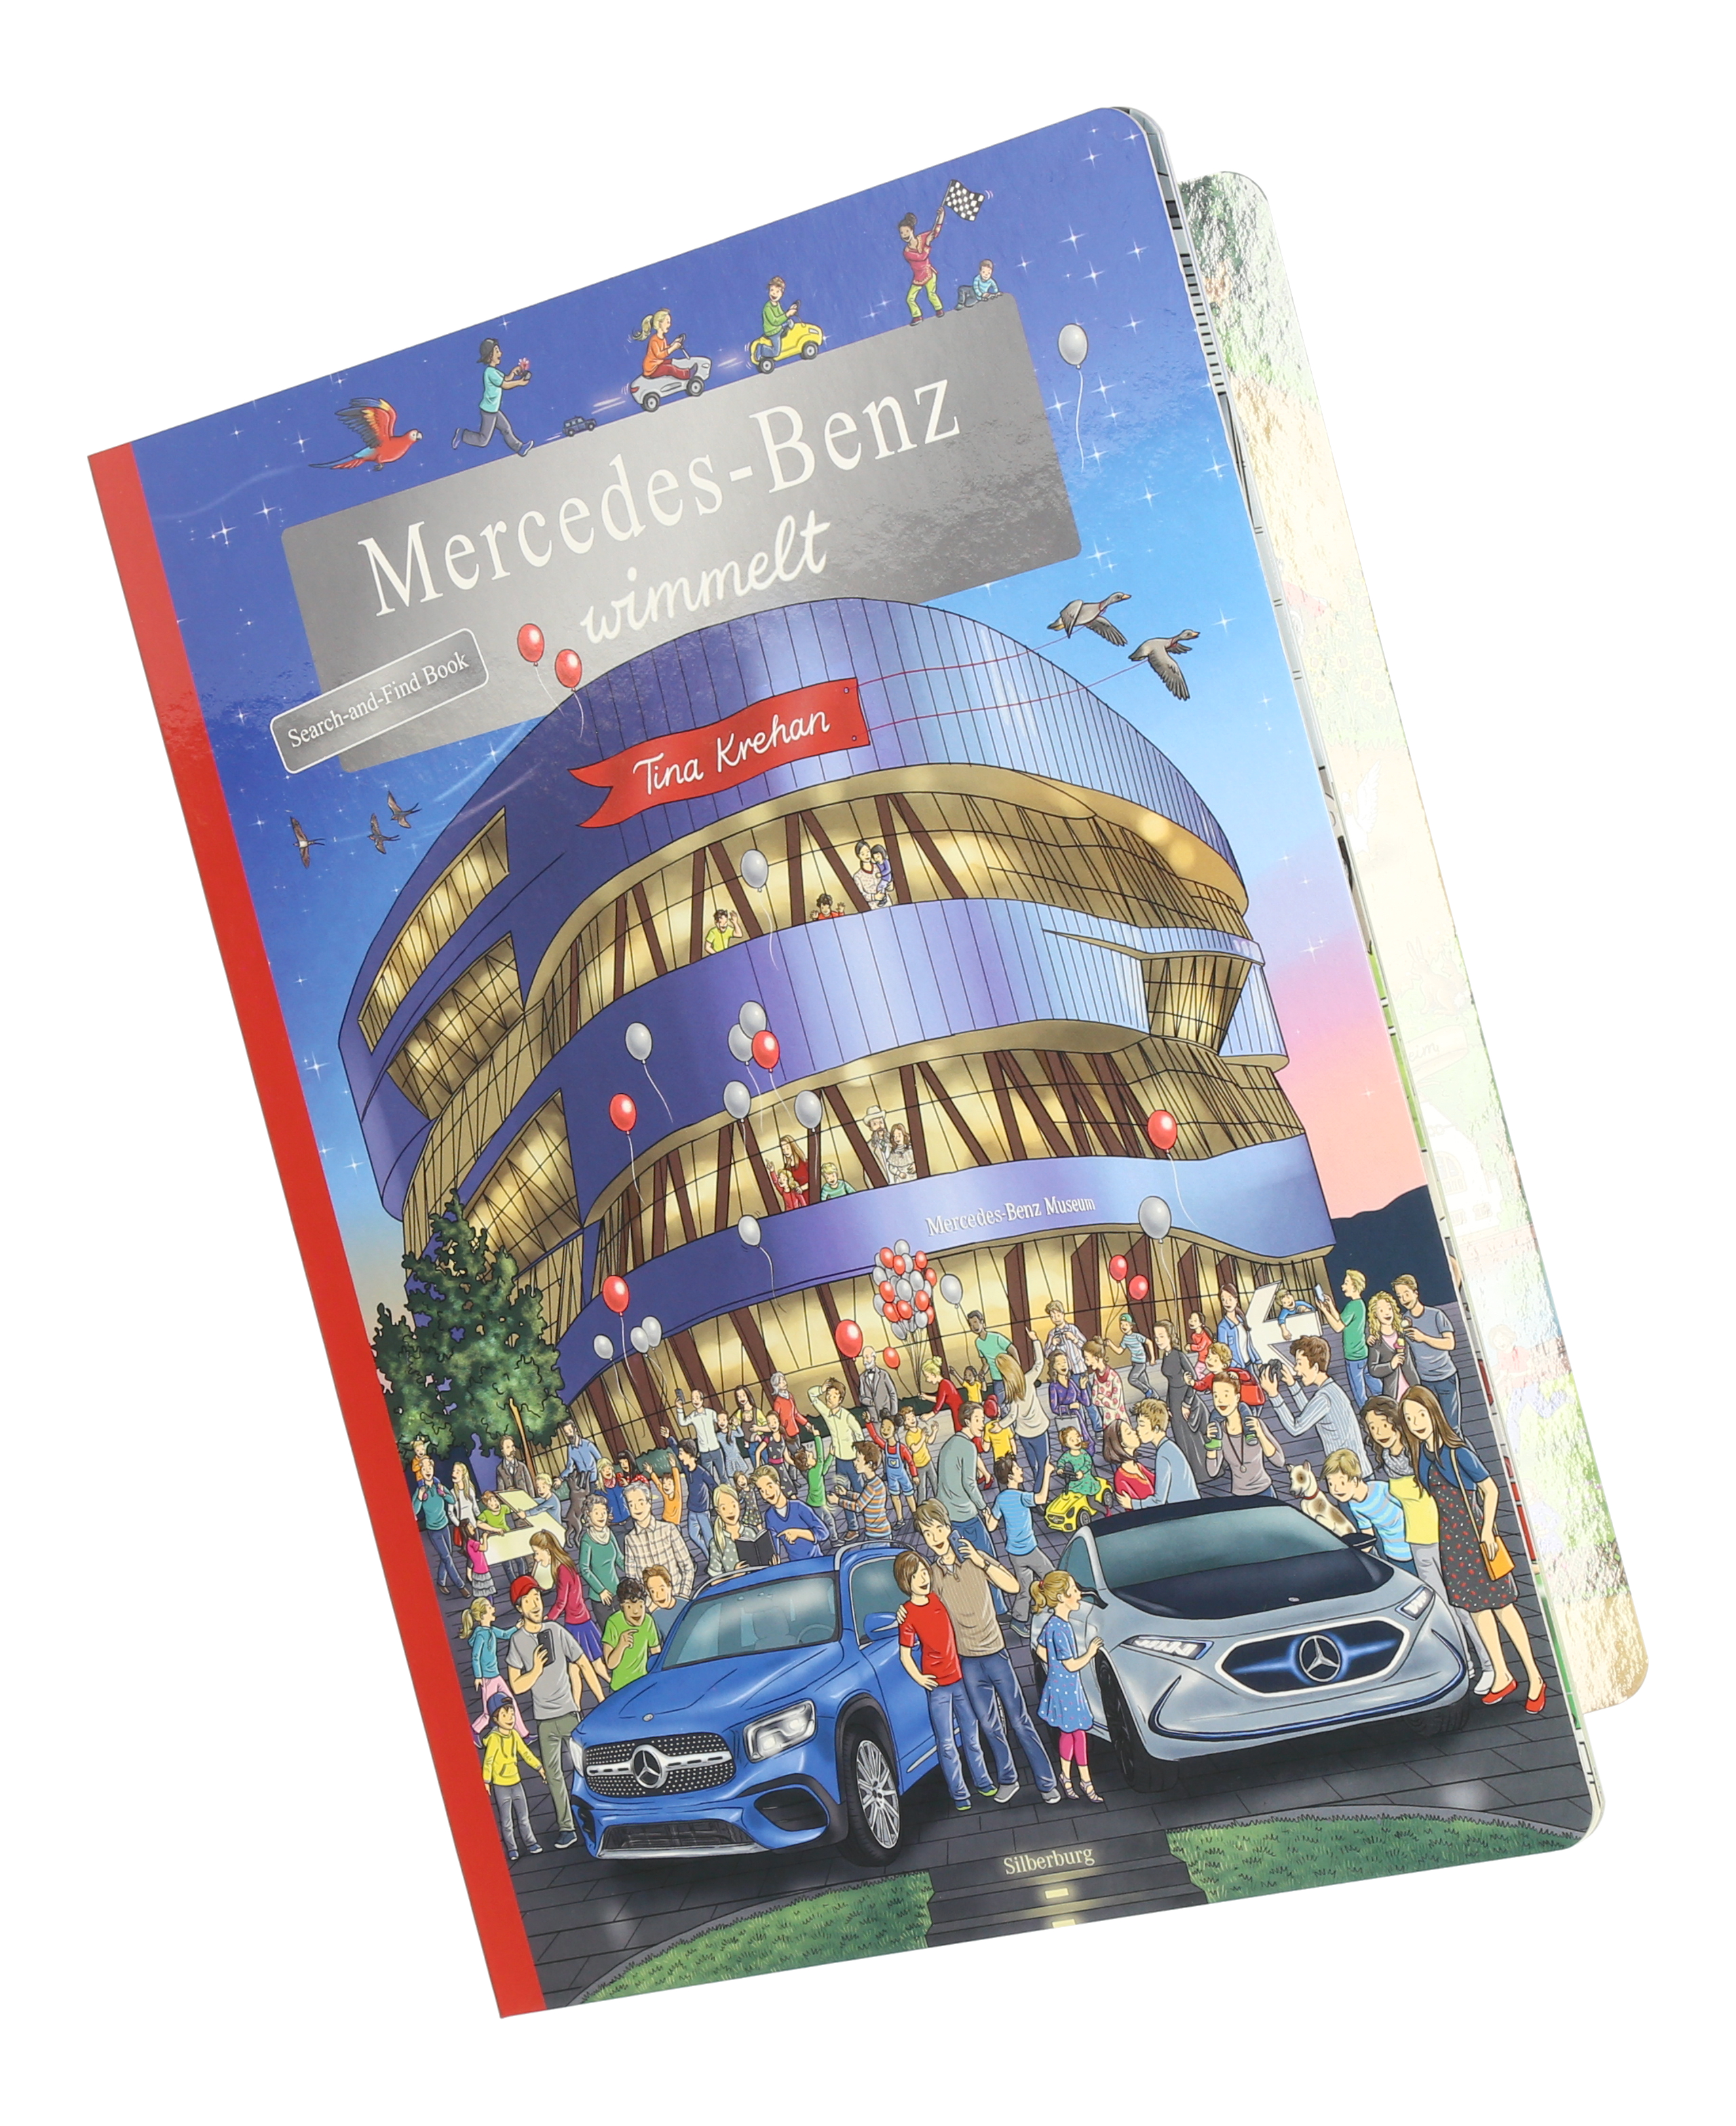 Mercedes-Benz Wimmelbuch